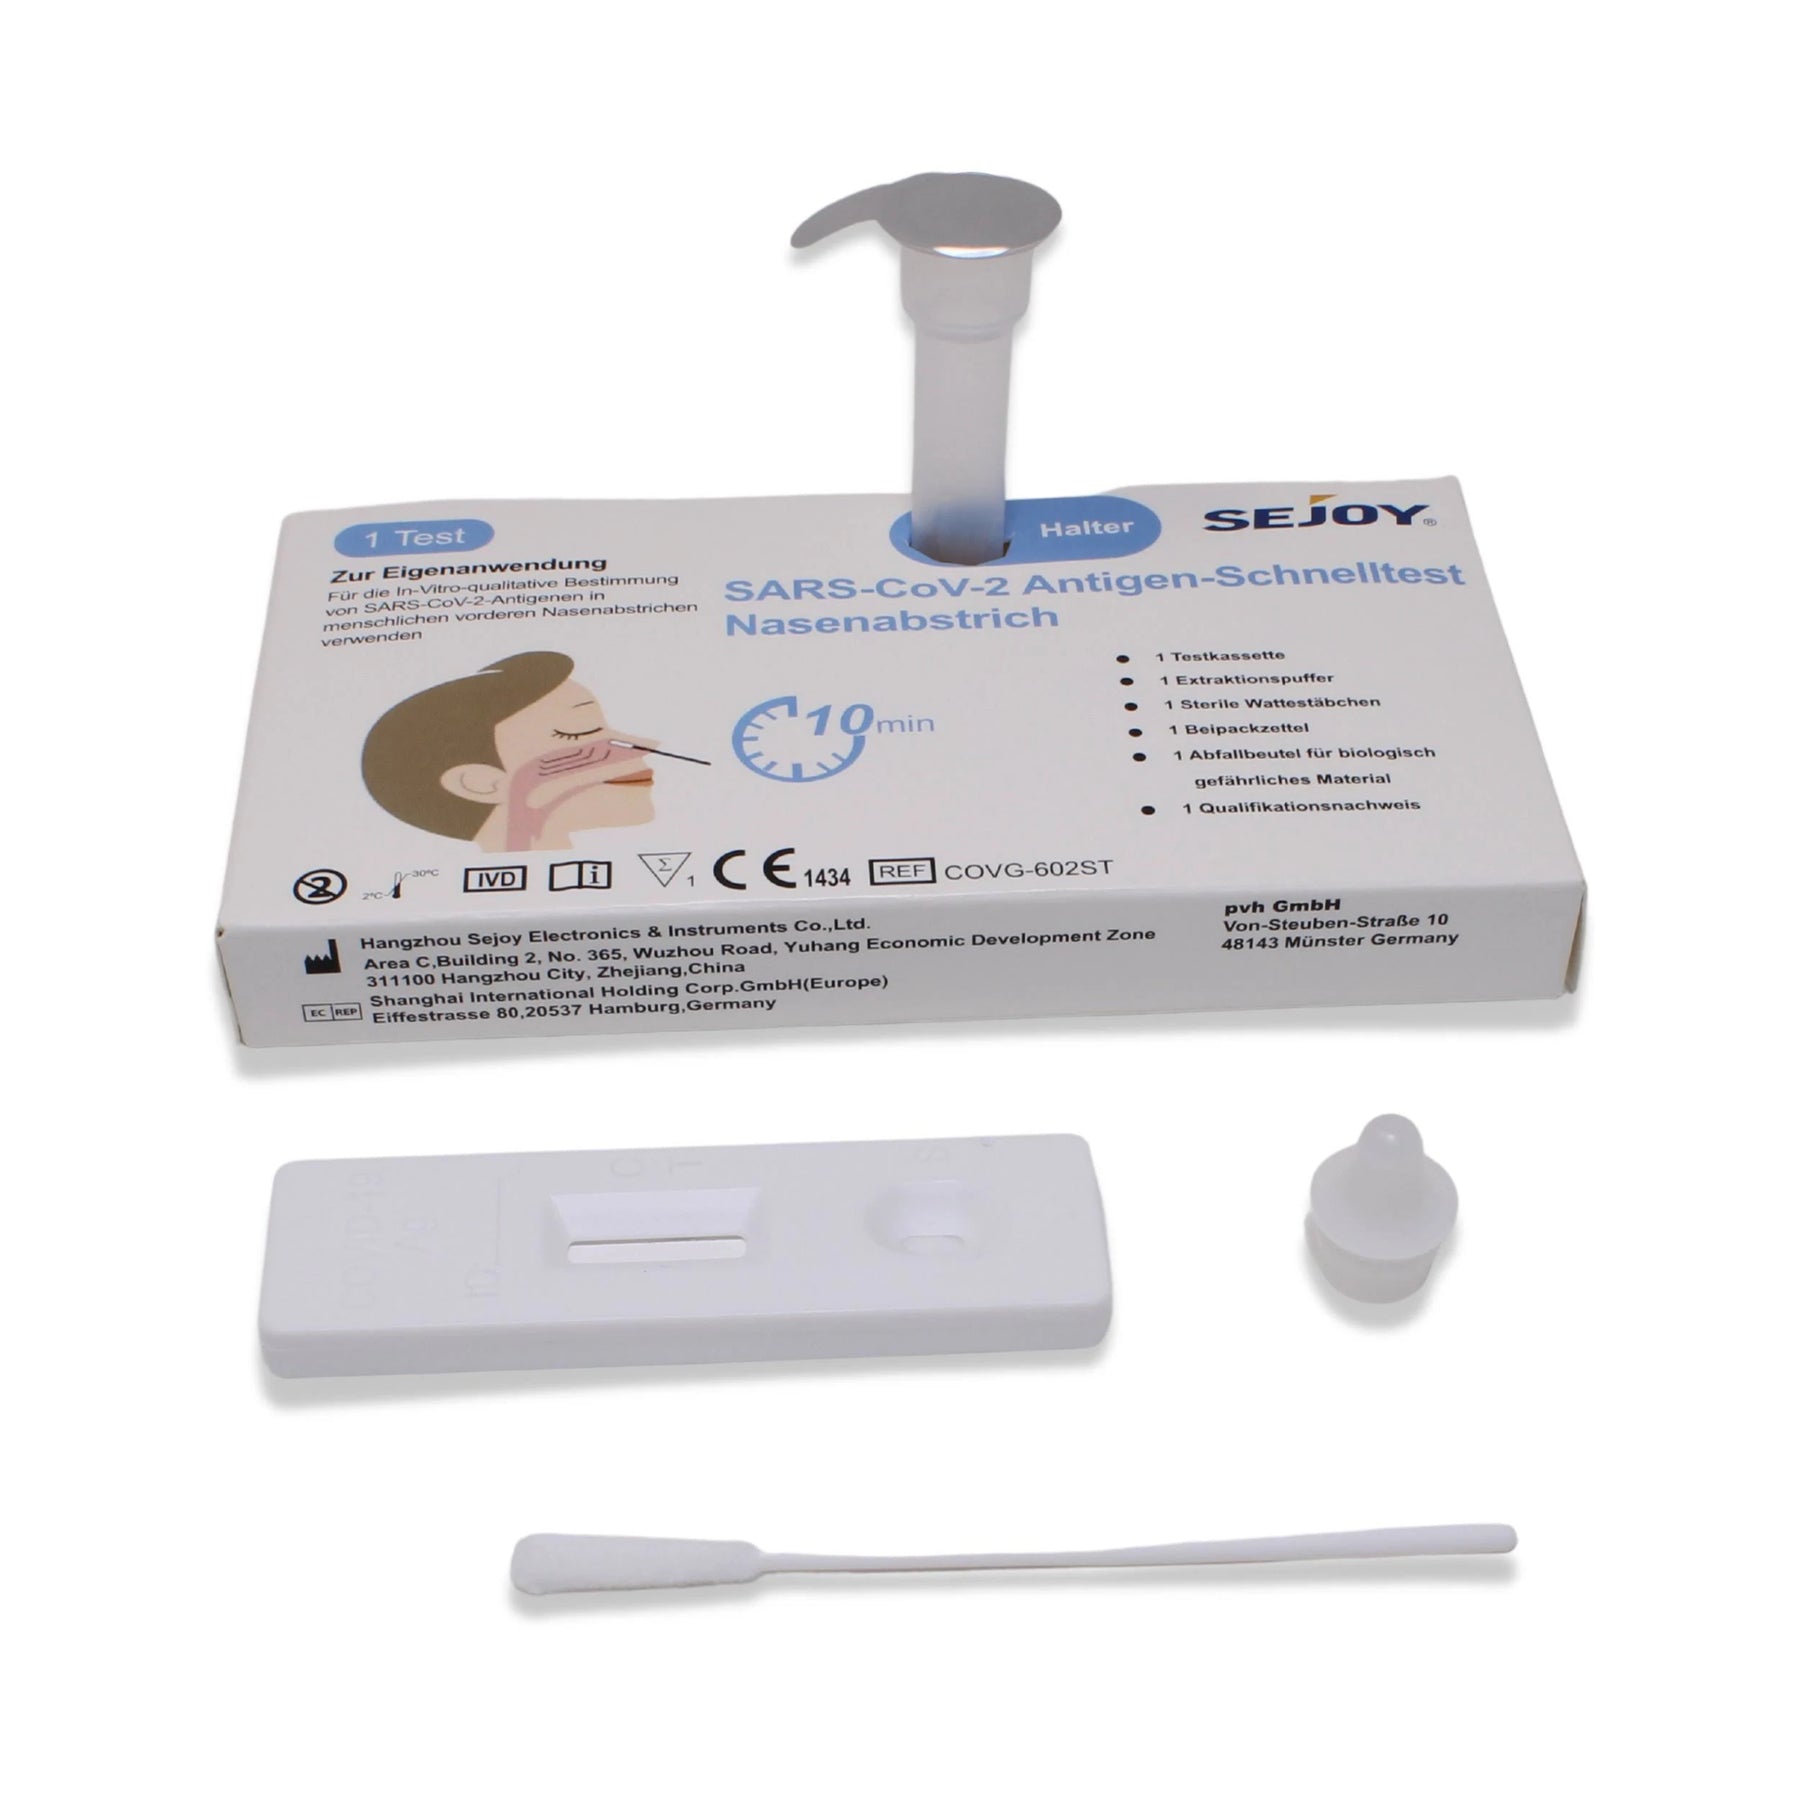      LAIEN SEJOY®  Antigen schnelltests NASAL mit CE1434,1 Karton 600 Tests(Einzelverpackung) 